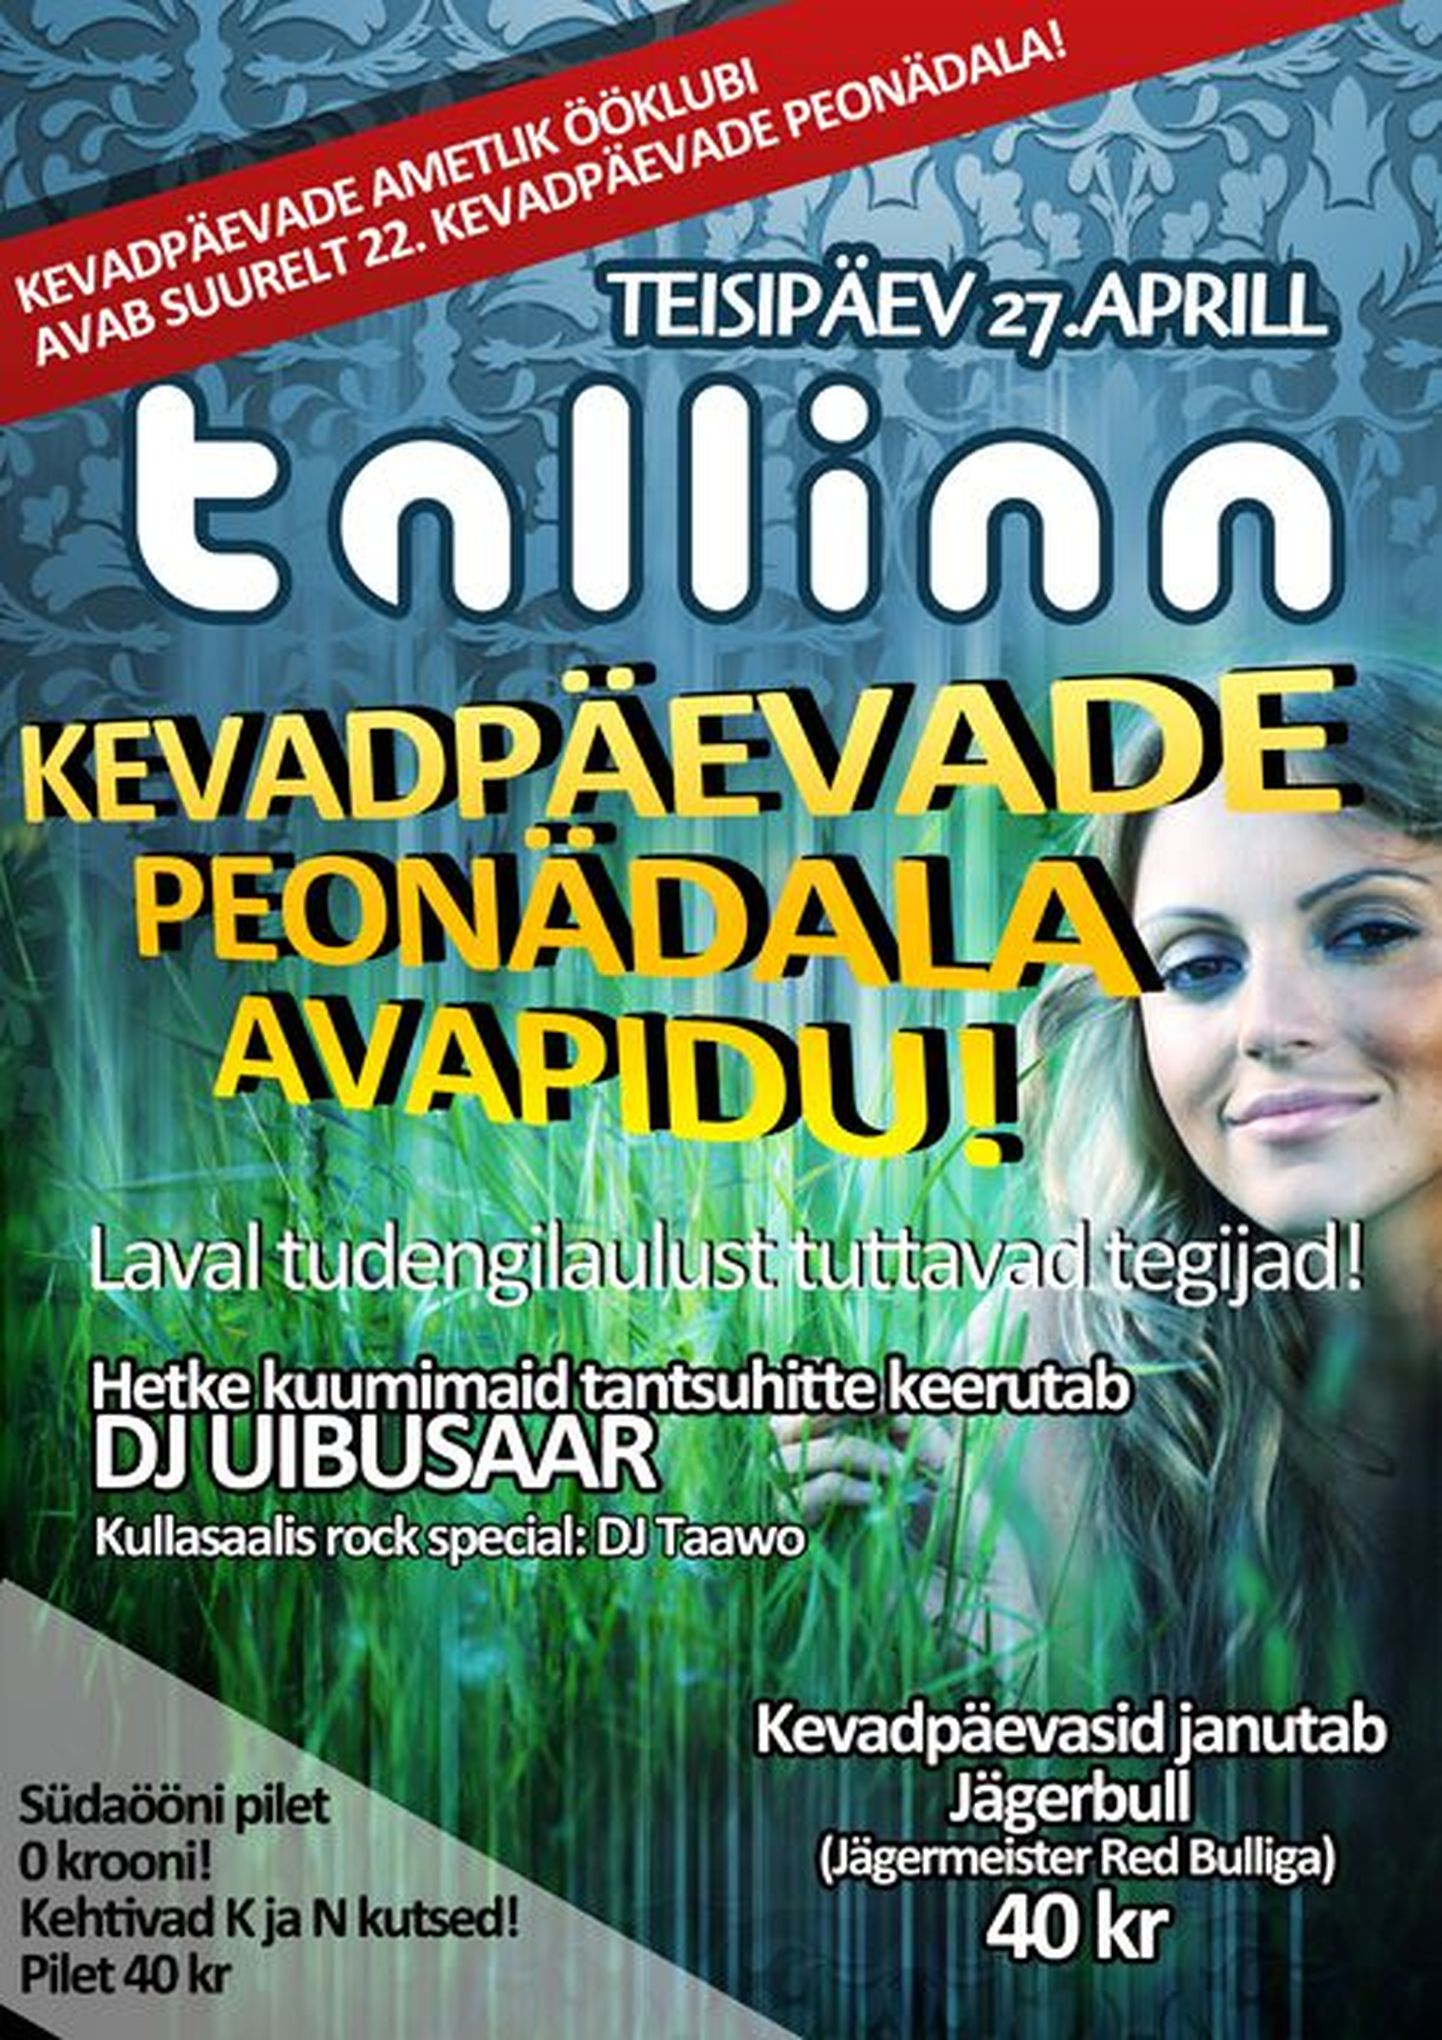 Club Tallinnas avatakse täna, 27. aprilliltudengite kevadpäevade peonädal!